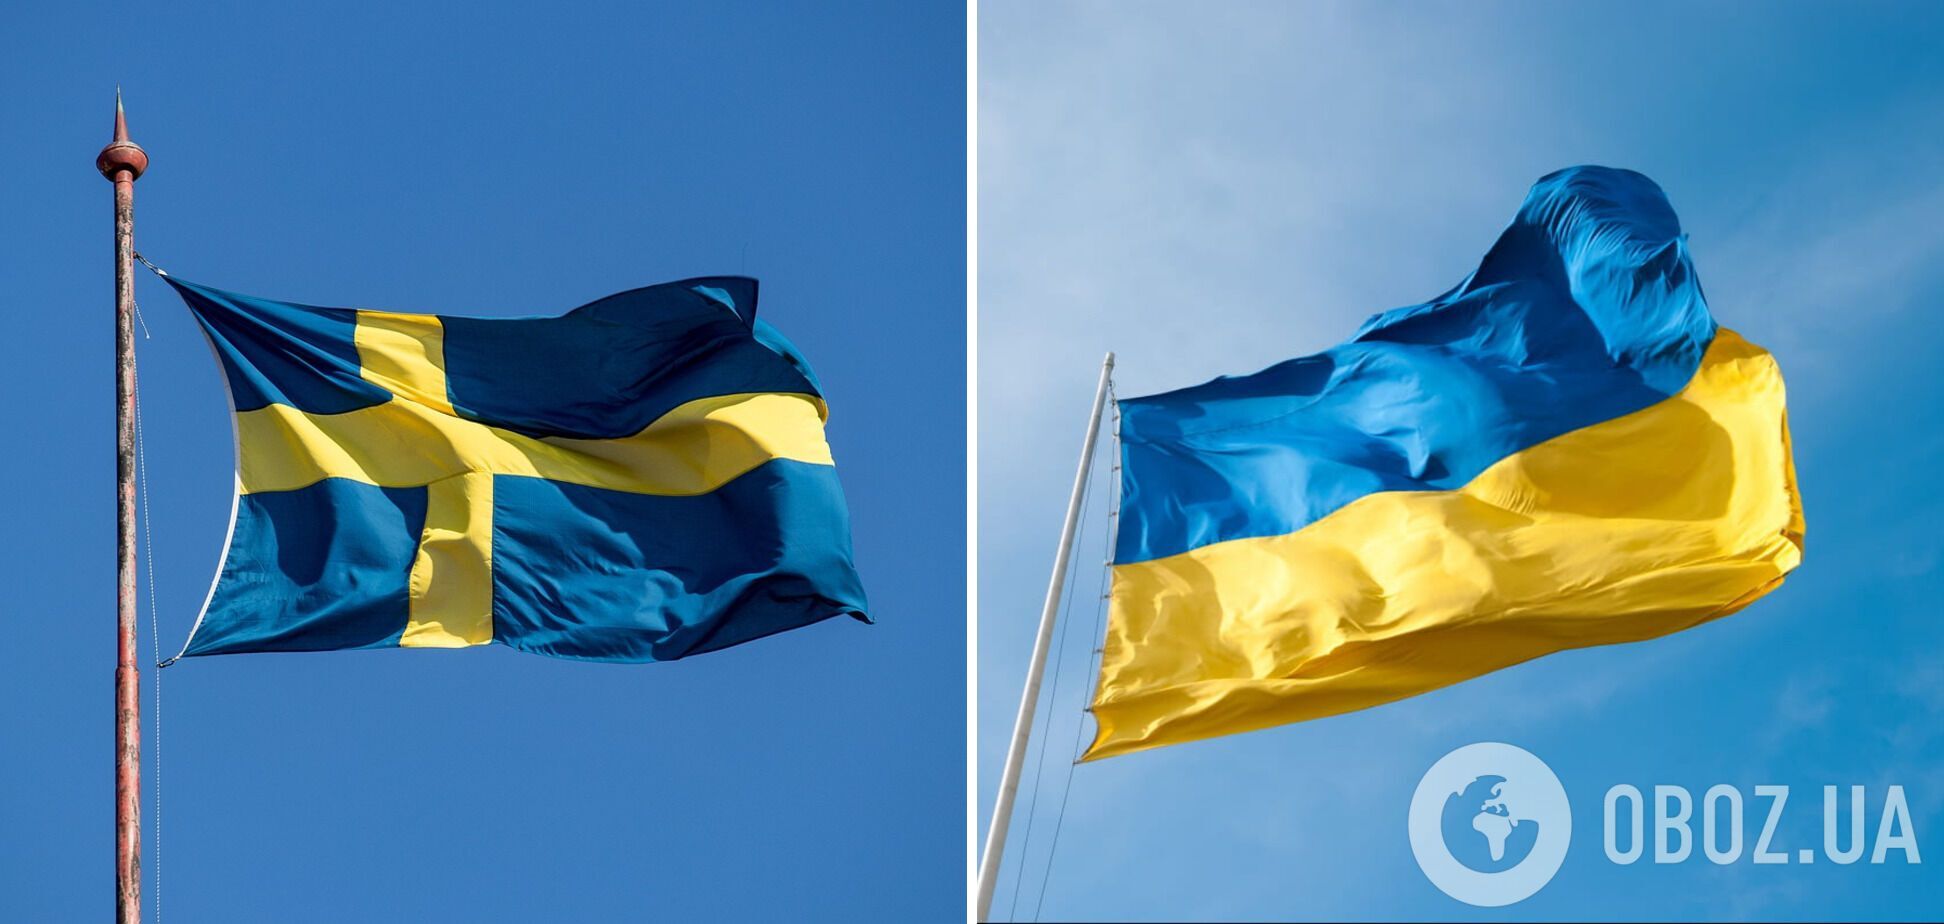 Россияне массово пишут доносы на одежду из Швеции, принимая шведский флаг за украинский. Видео